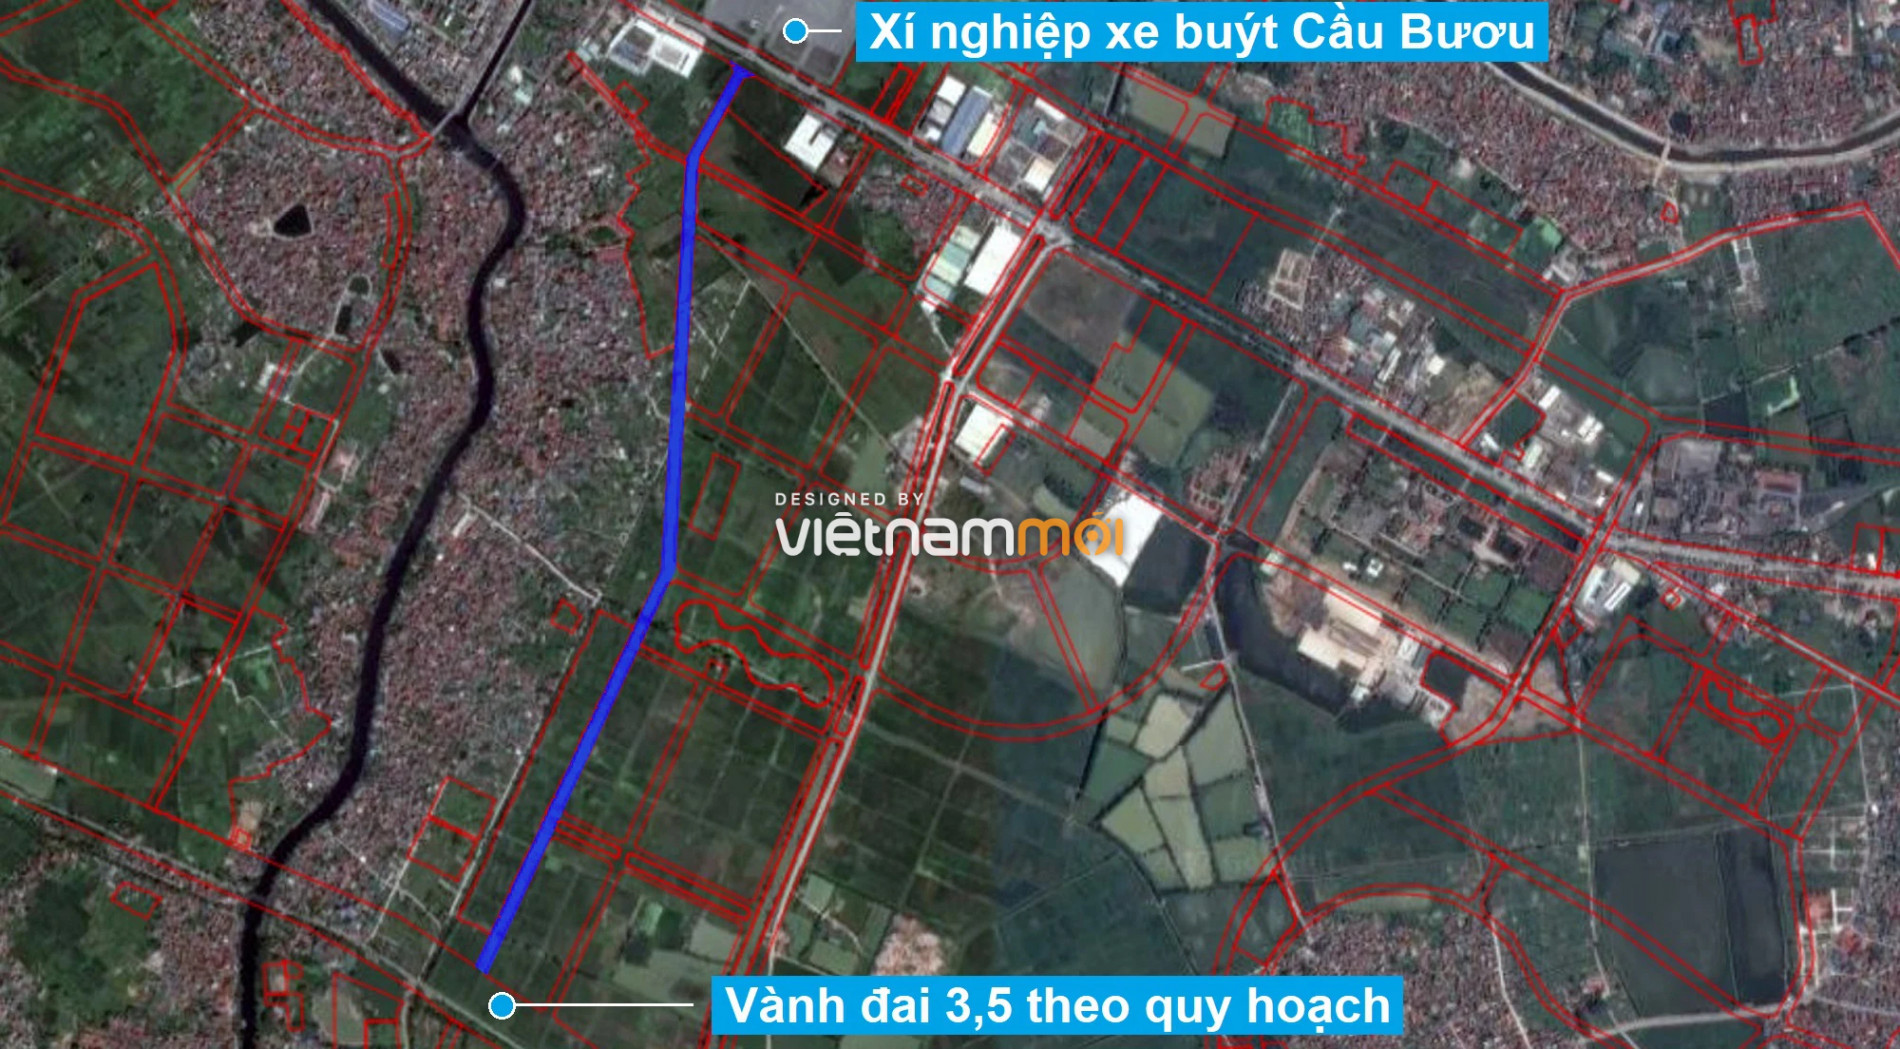 Những khu đất sắp thu hồi để mở đường ở xã Tả Thanh Oai, Thanh Trì, Hà Nội (phần 2) - Ảnh 10.